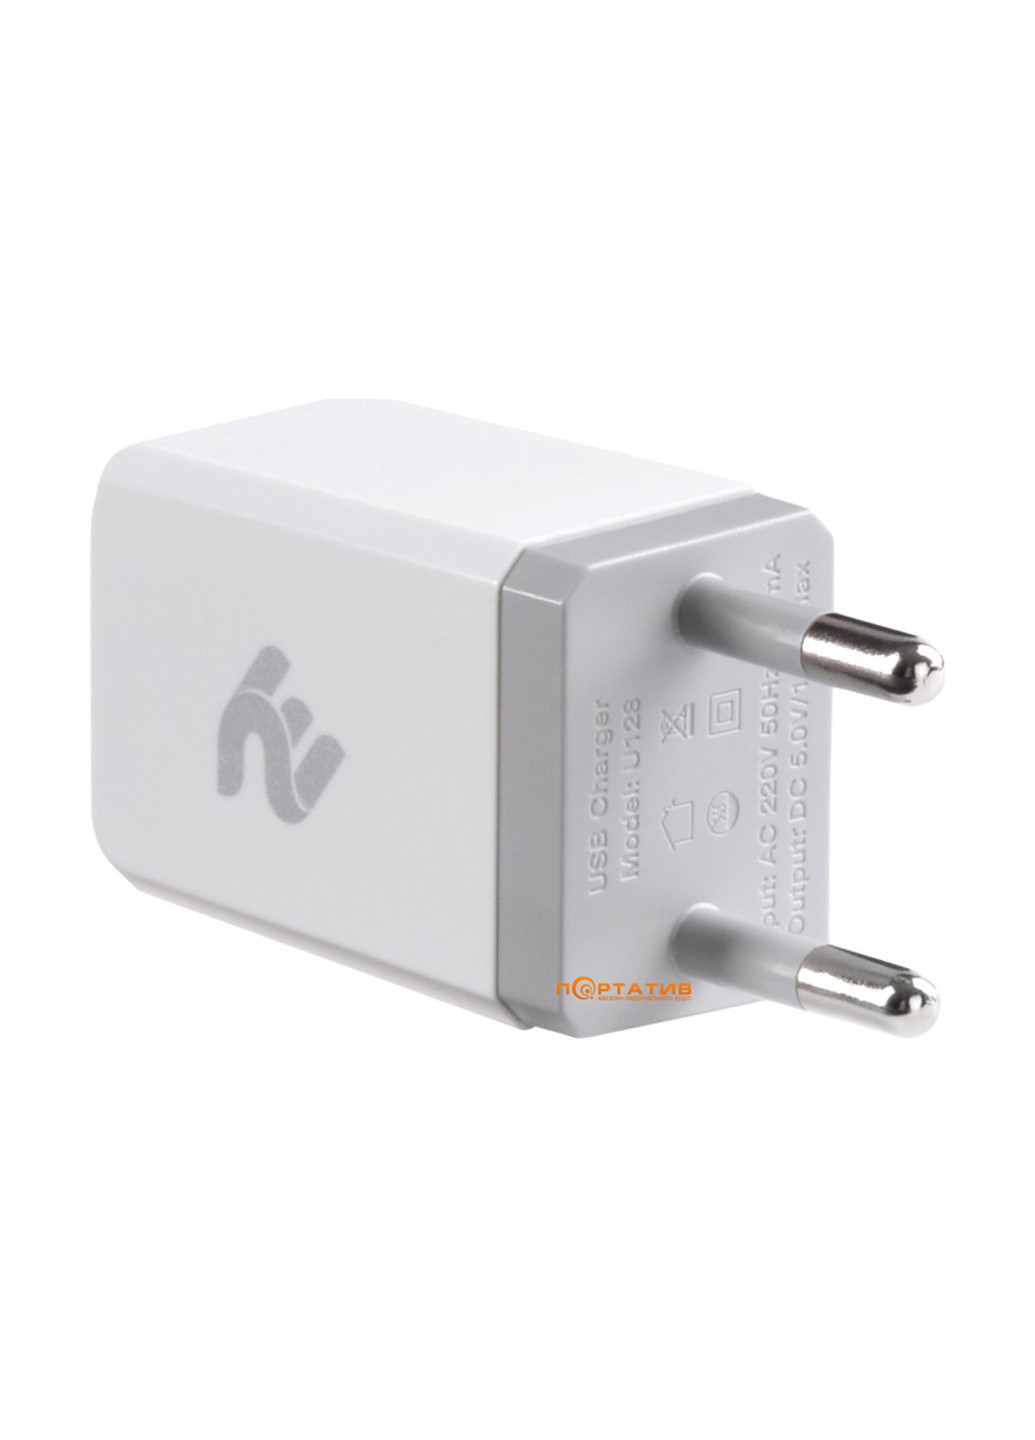 Сетевое зарядное устройство USB Wall Charger USB:DC5V/1A, white (-WC1USB1A-W) 2E usb wall charger usb:dc5v/1a, white (2e-wc1usb1a-w) (137882421)